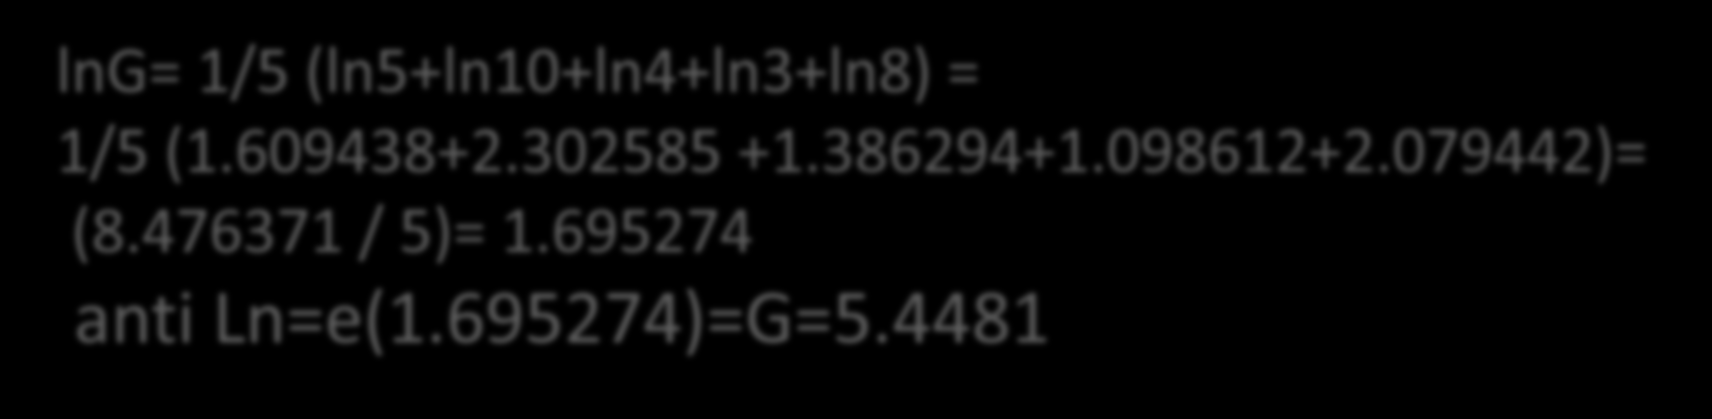 İşletme no 1 2 3 4 5 Arazi genişliği (da) 5 10 4 3 8 G = n x1.x2 xn = 5 5x10x4x3x8 = 5 4800 = 5.4481 lng= 1/5 (ln5+ln10+ln4+ln3+ln8) = 1/5 (1.